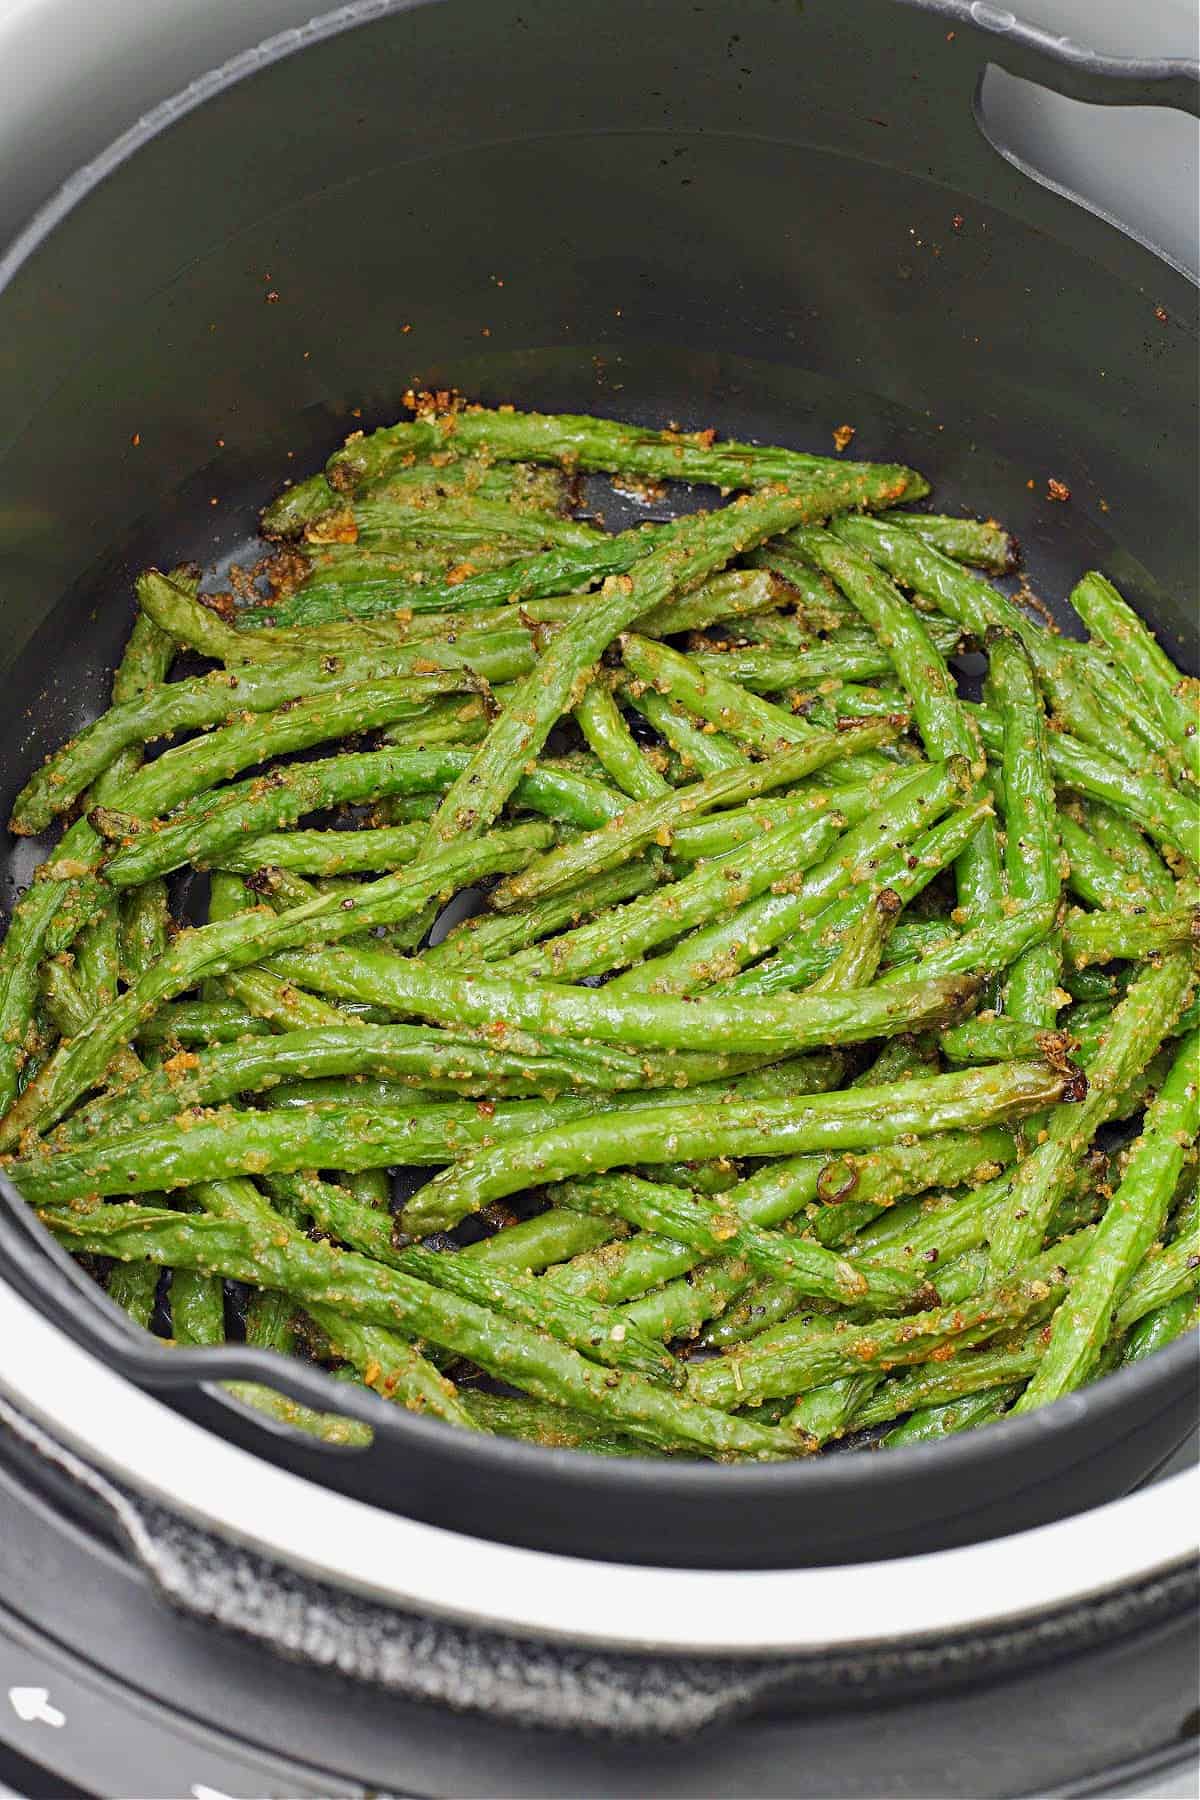 cooked ninja foodi air fryer green beans in the air fryer basket